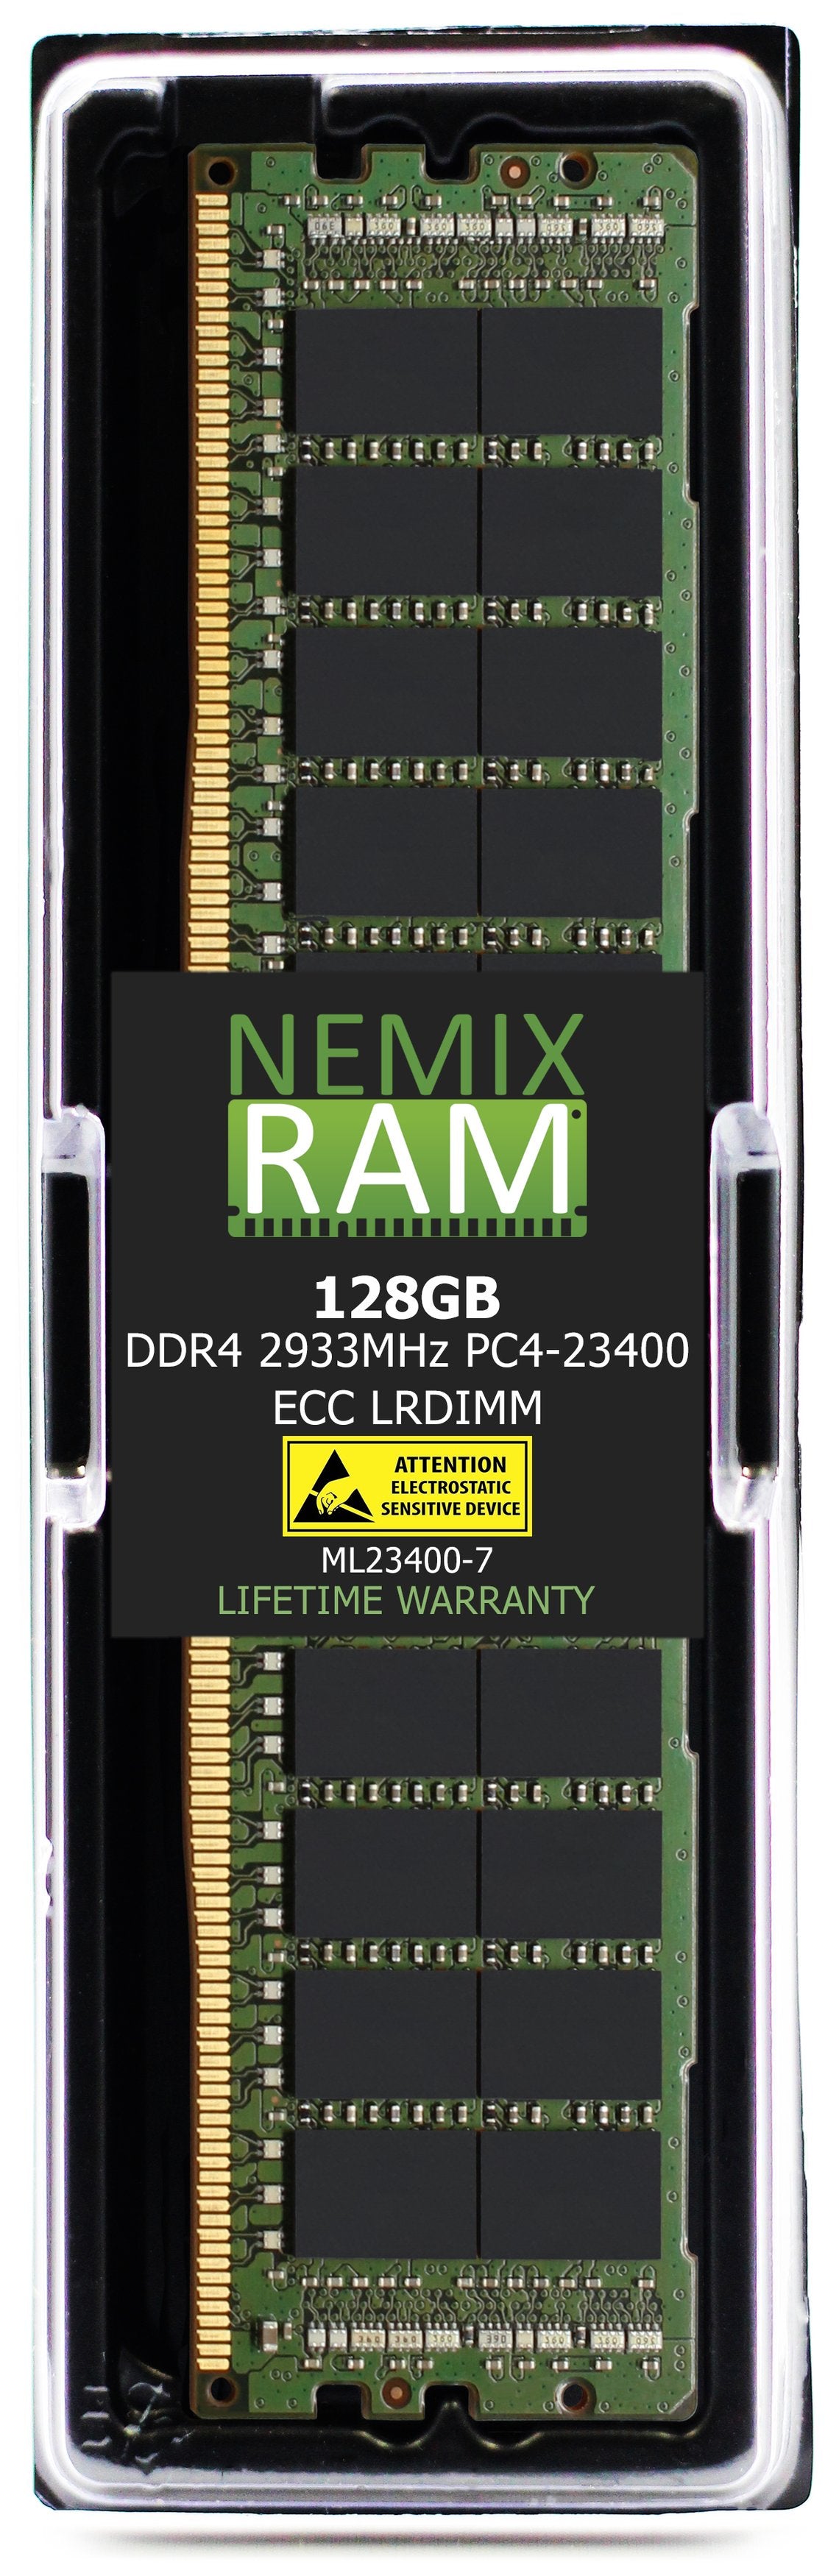 128GB DDR4 2933MHZ PC4-23400 LRDIMM Compatible with Supermicro MEM-DR412L-SL02-LR29